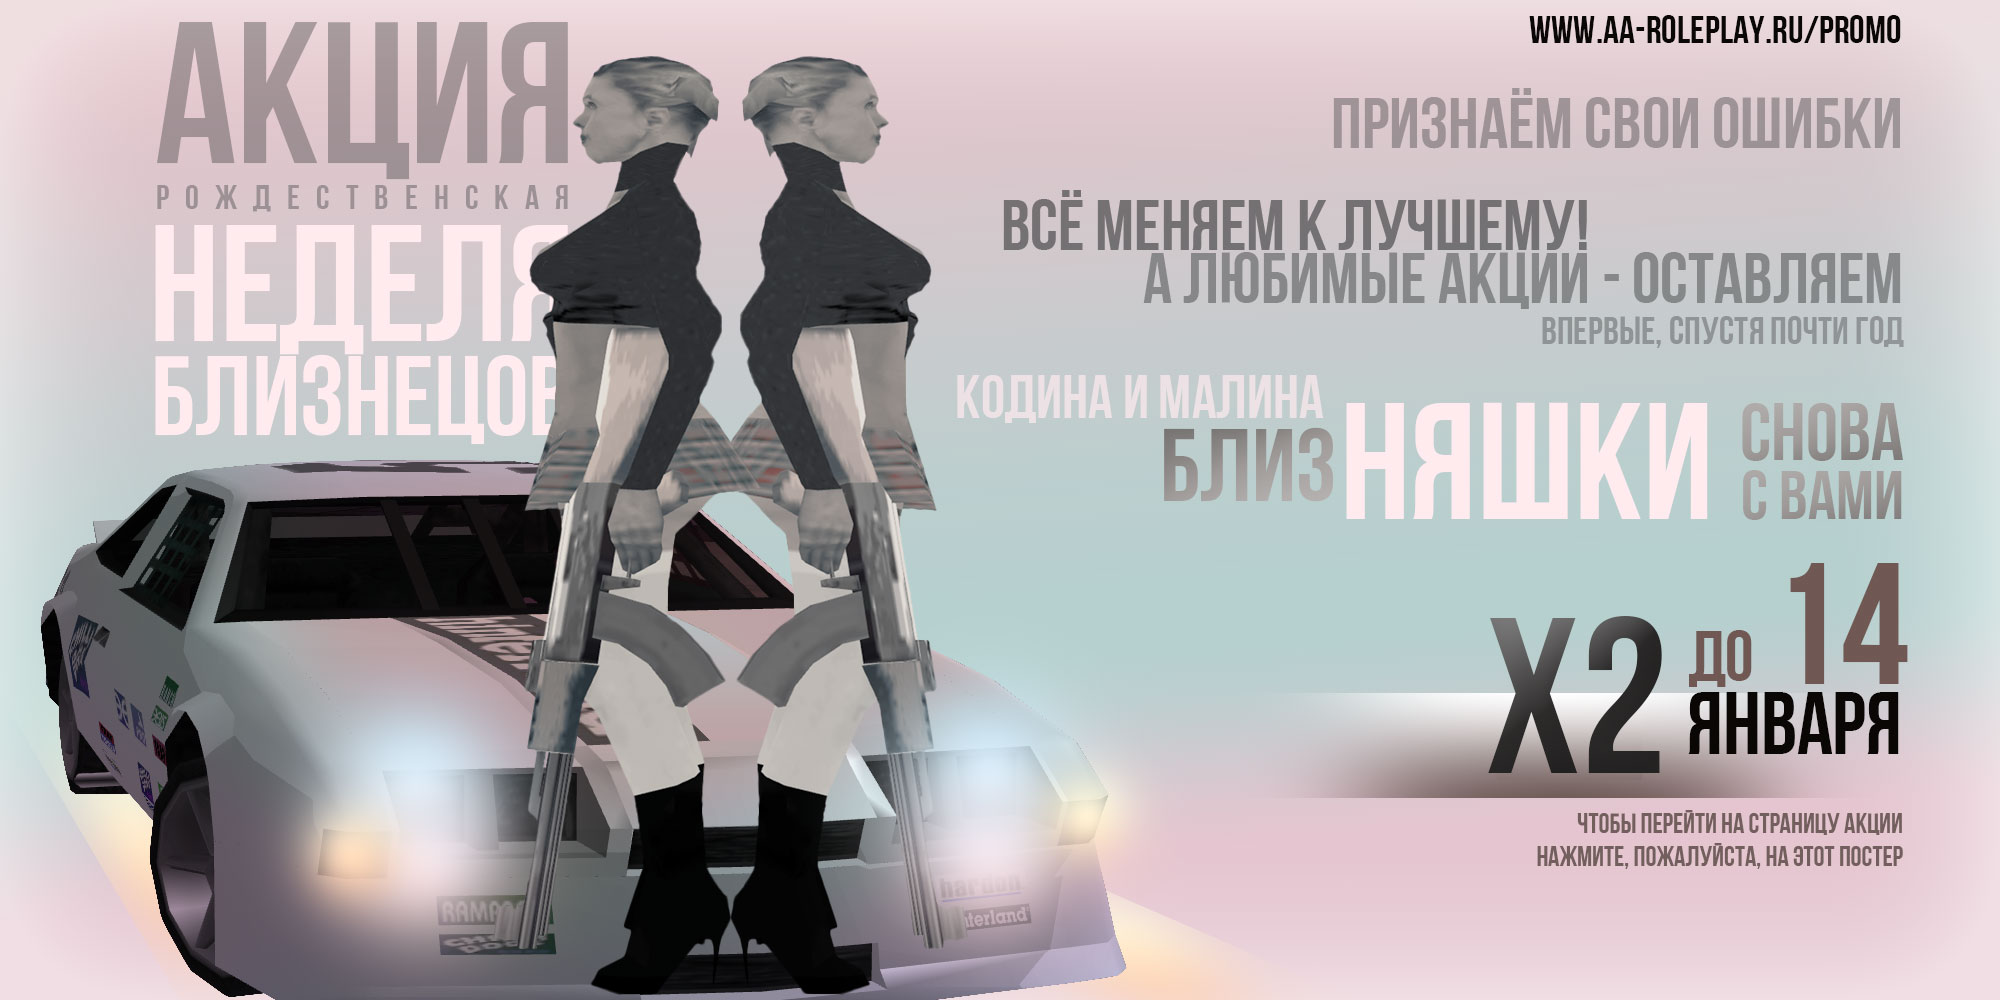 Постер акции - Неделя близнецов (197.92 КБ) Просмотров: 2112